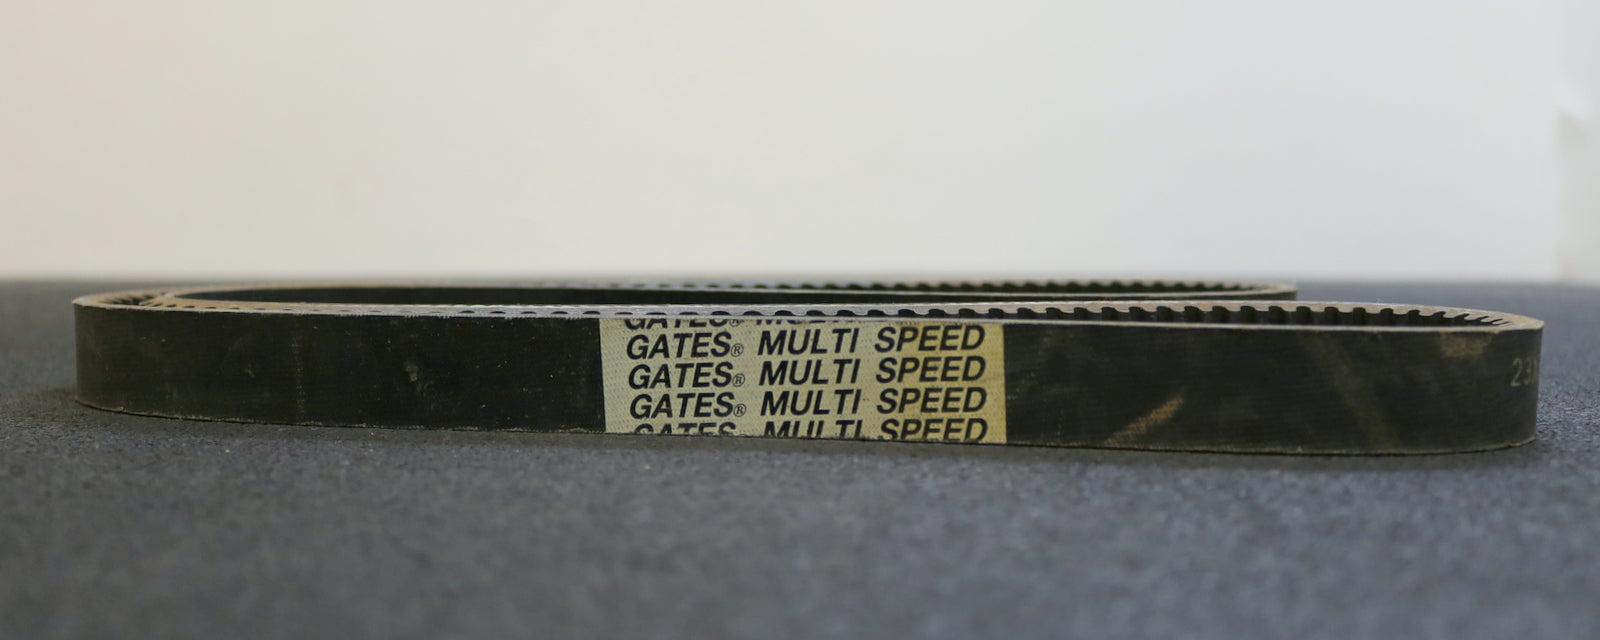 GATES MULTI SPEED Breitkeilriemen Wide V-belt 4G2 23x8x1400Li Innenlänge 1400mm